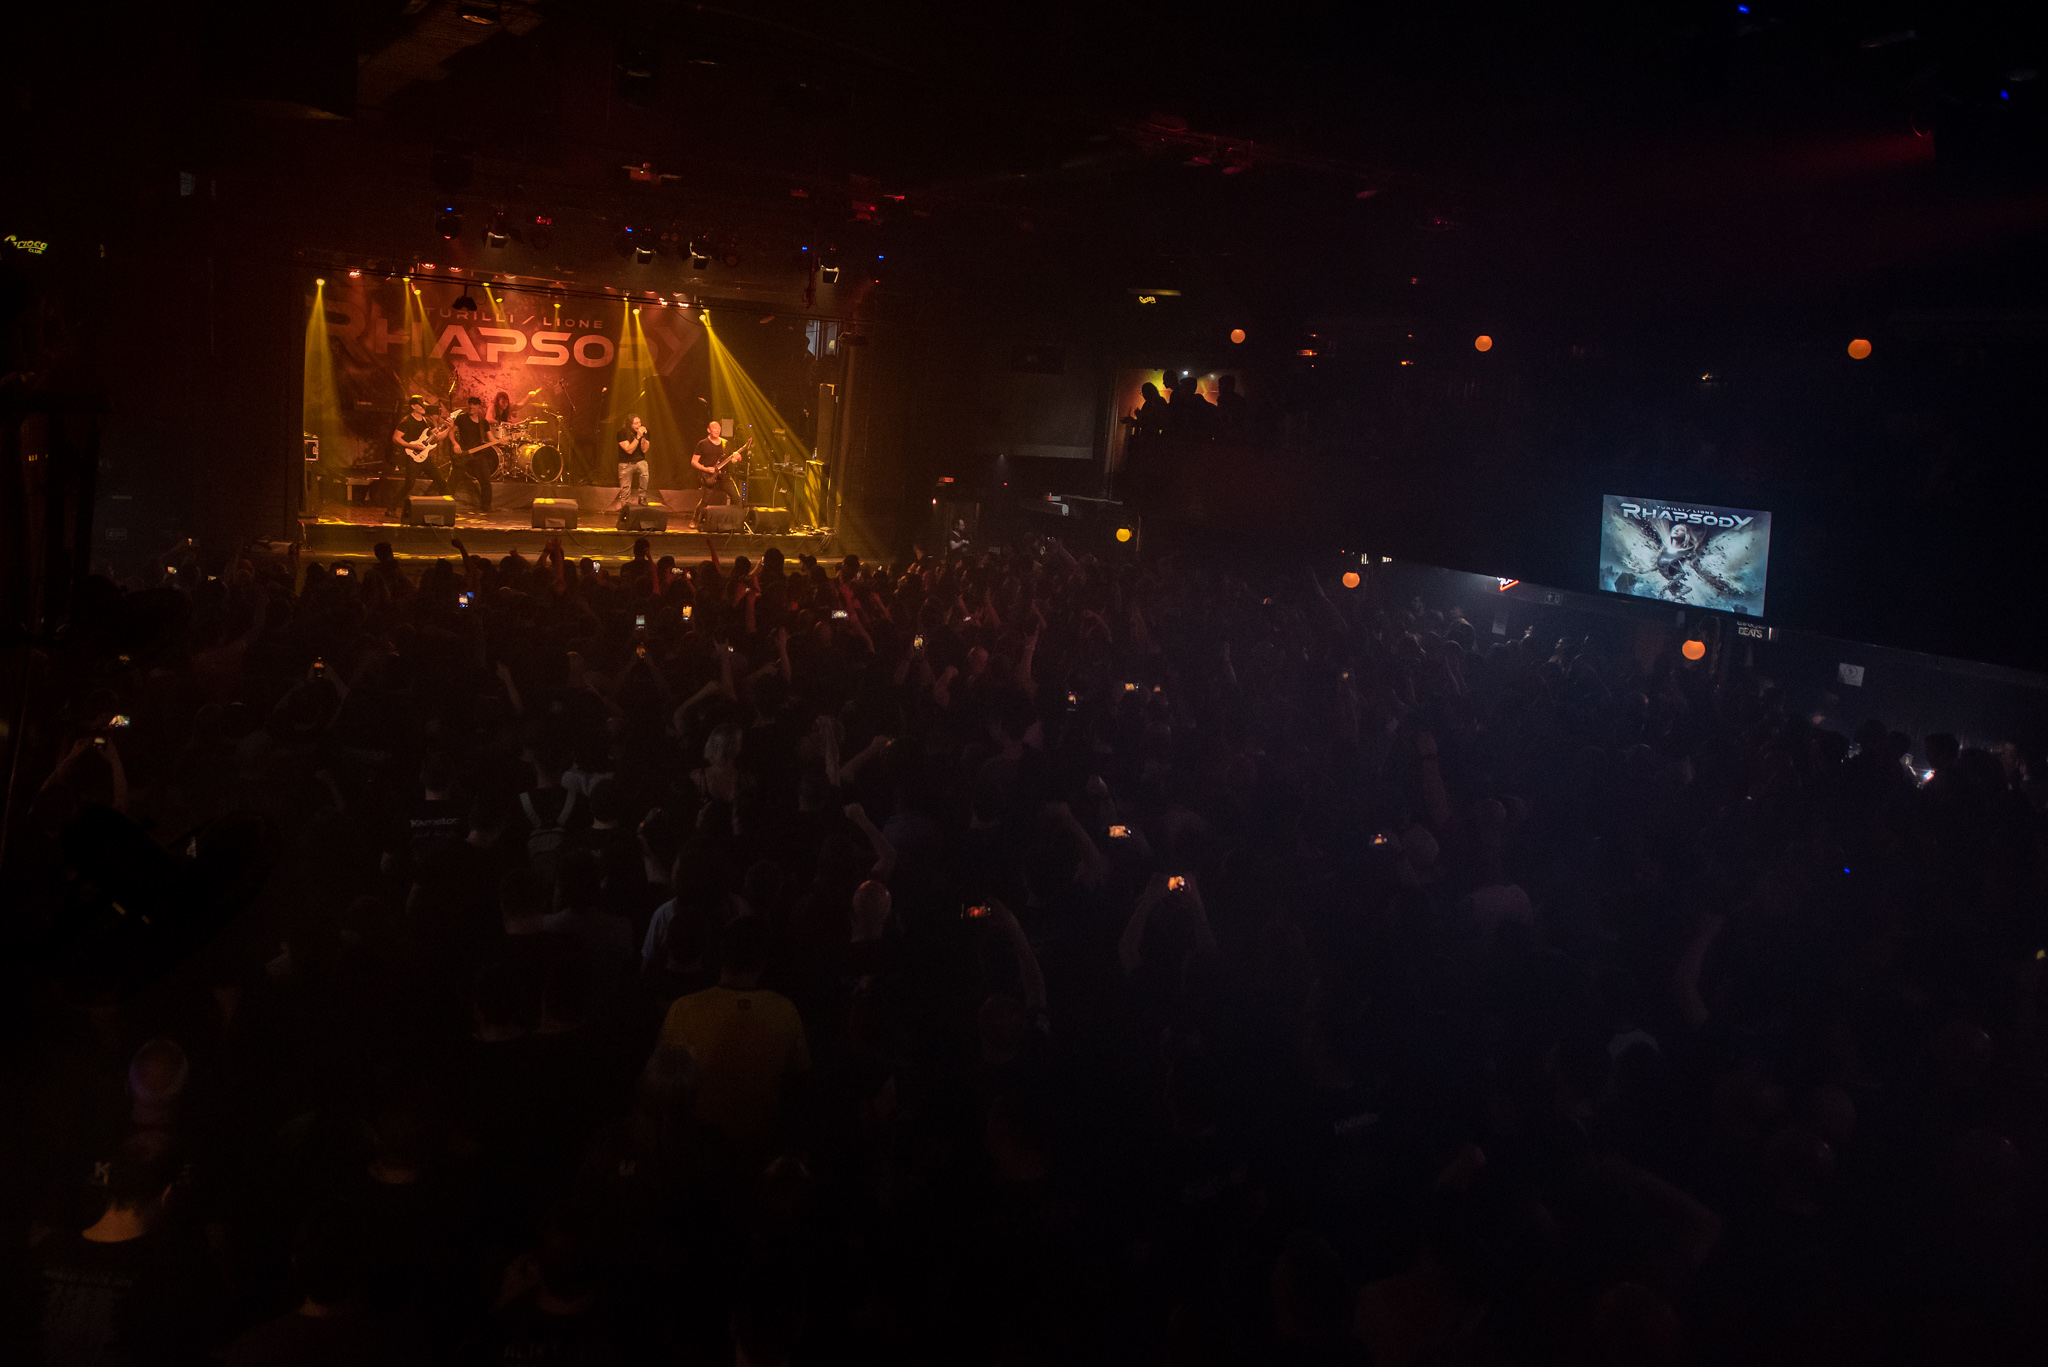 Turilli/Lione Rhapsody no Carioca Club, em São Paulo. Créditos: Leca Suzuki